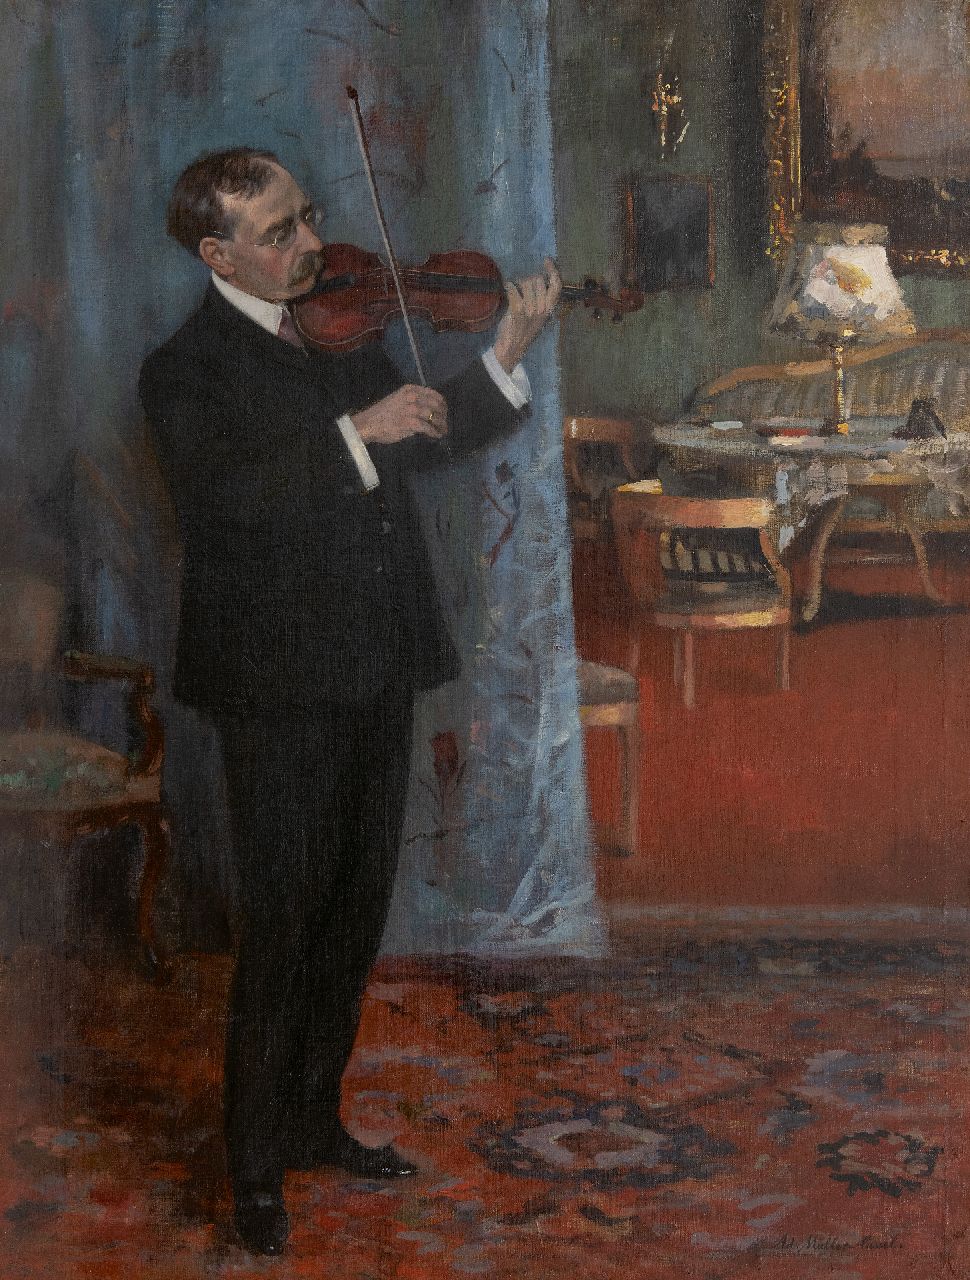 Müller-Cassel A.L.  | Adolf Leonhard Müller-Cassel, The Fiddler, oil on canvas 77.6 x 58.9 cm, signed l.r.